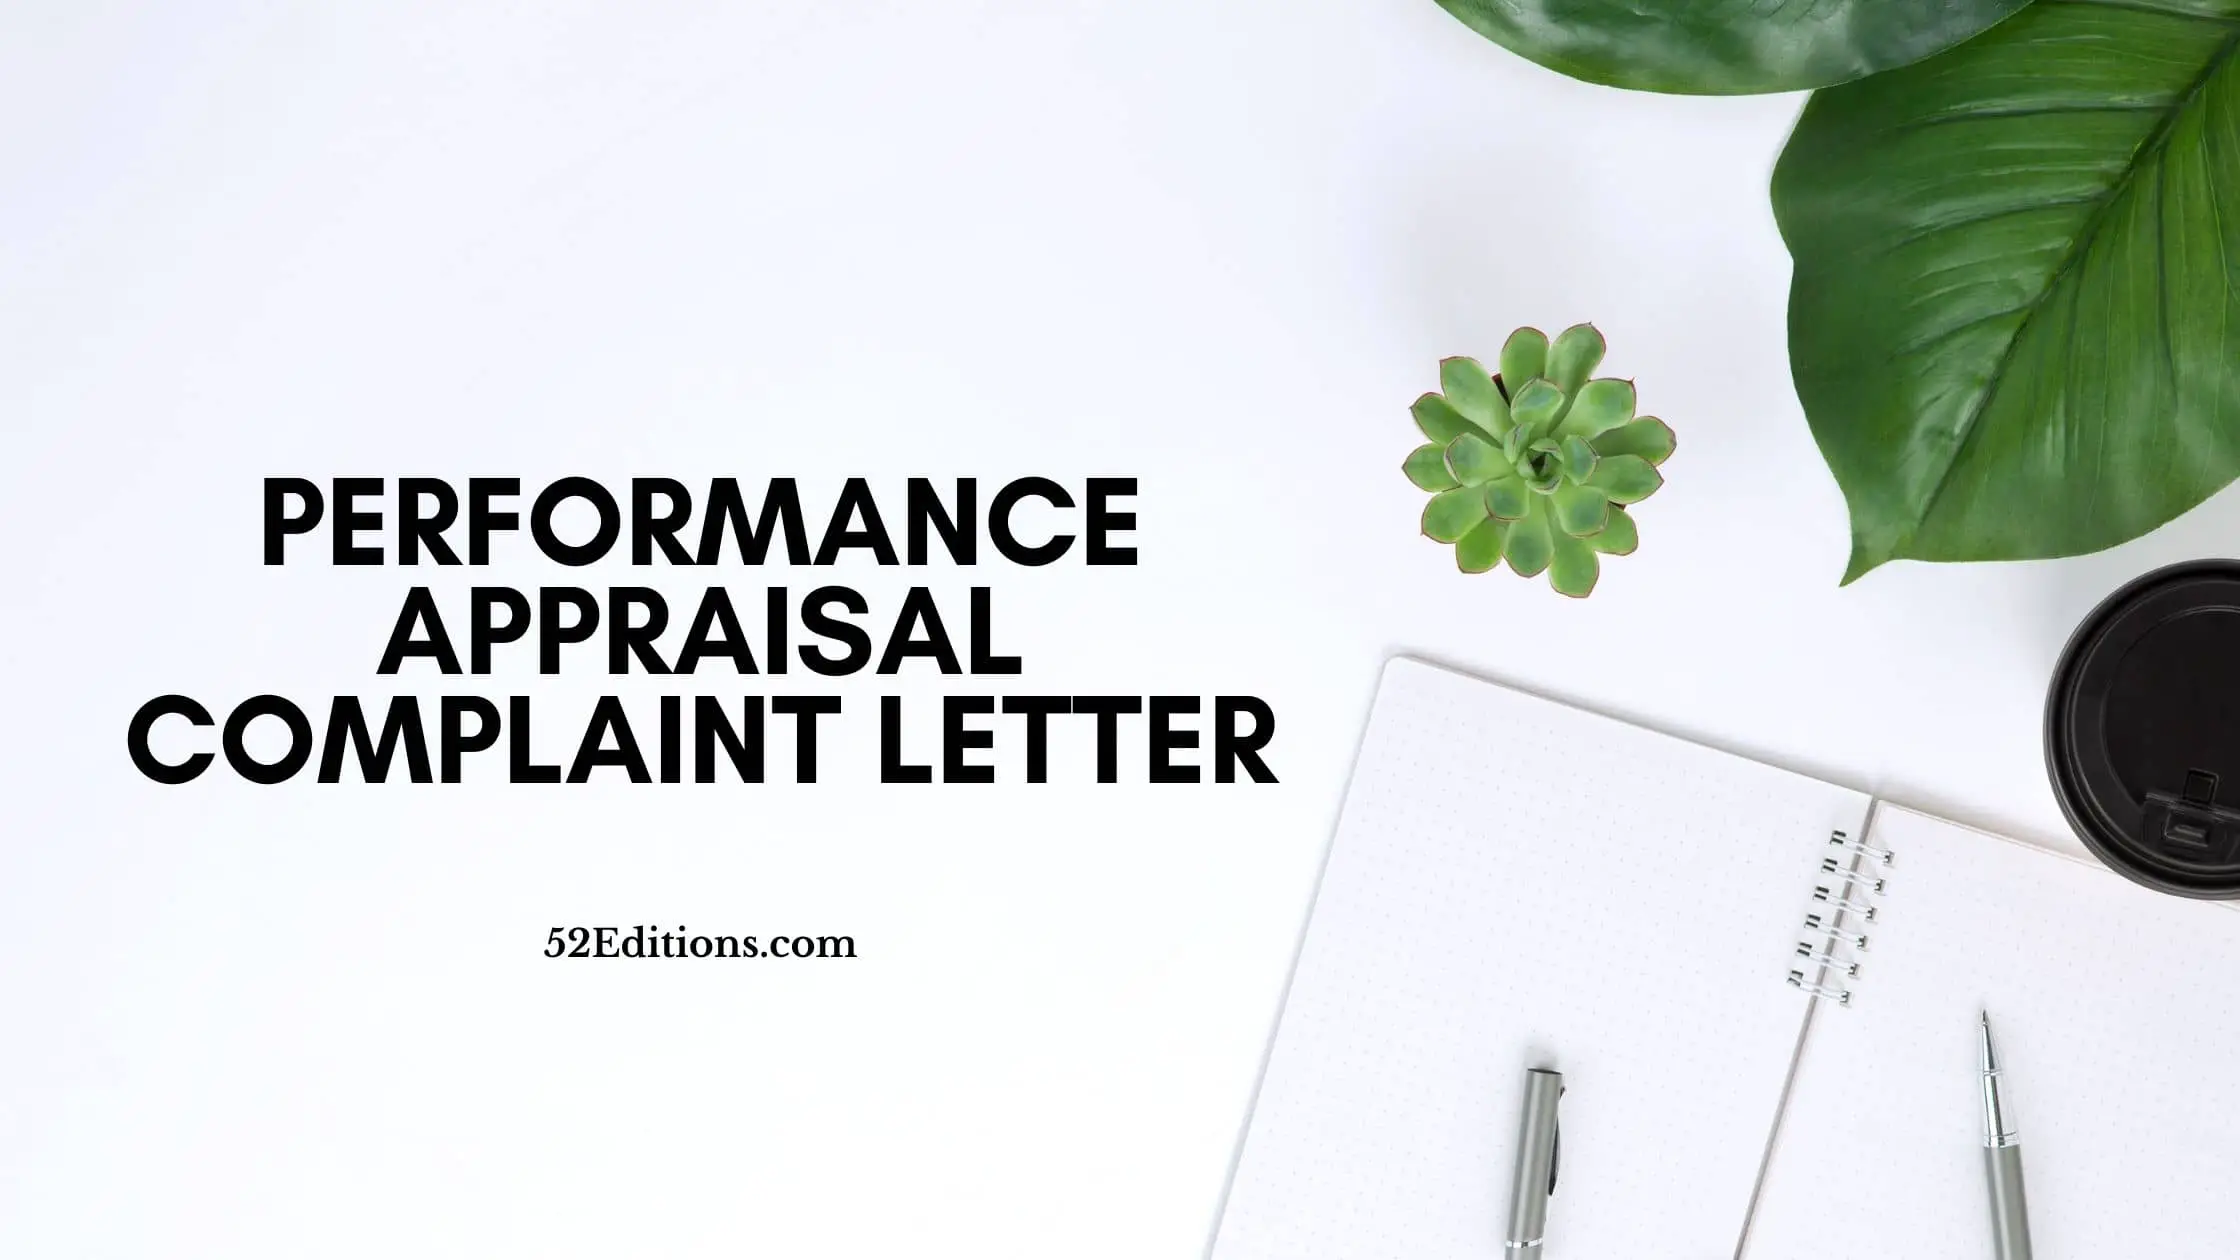 Performance Appraisal Complaint Letter (Sample) // FREE Letter